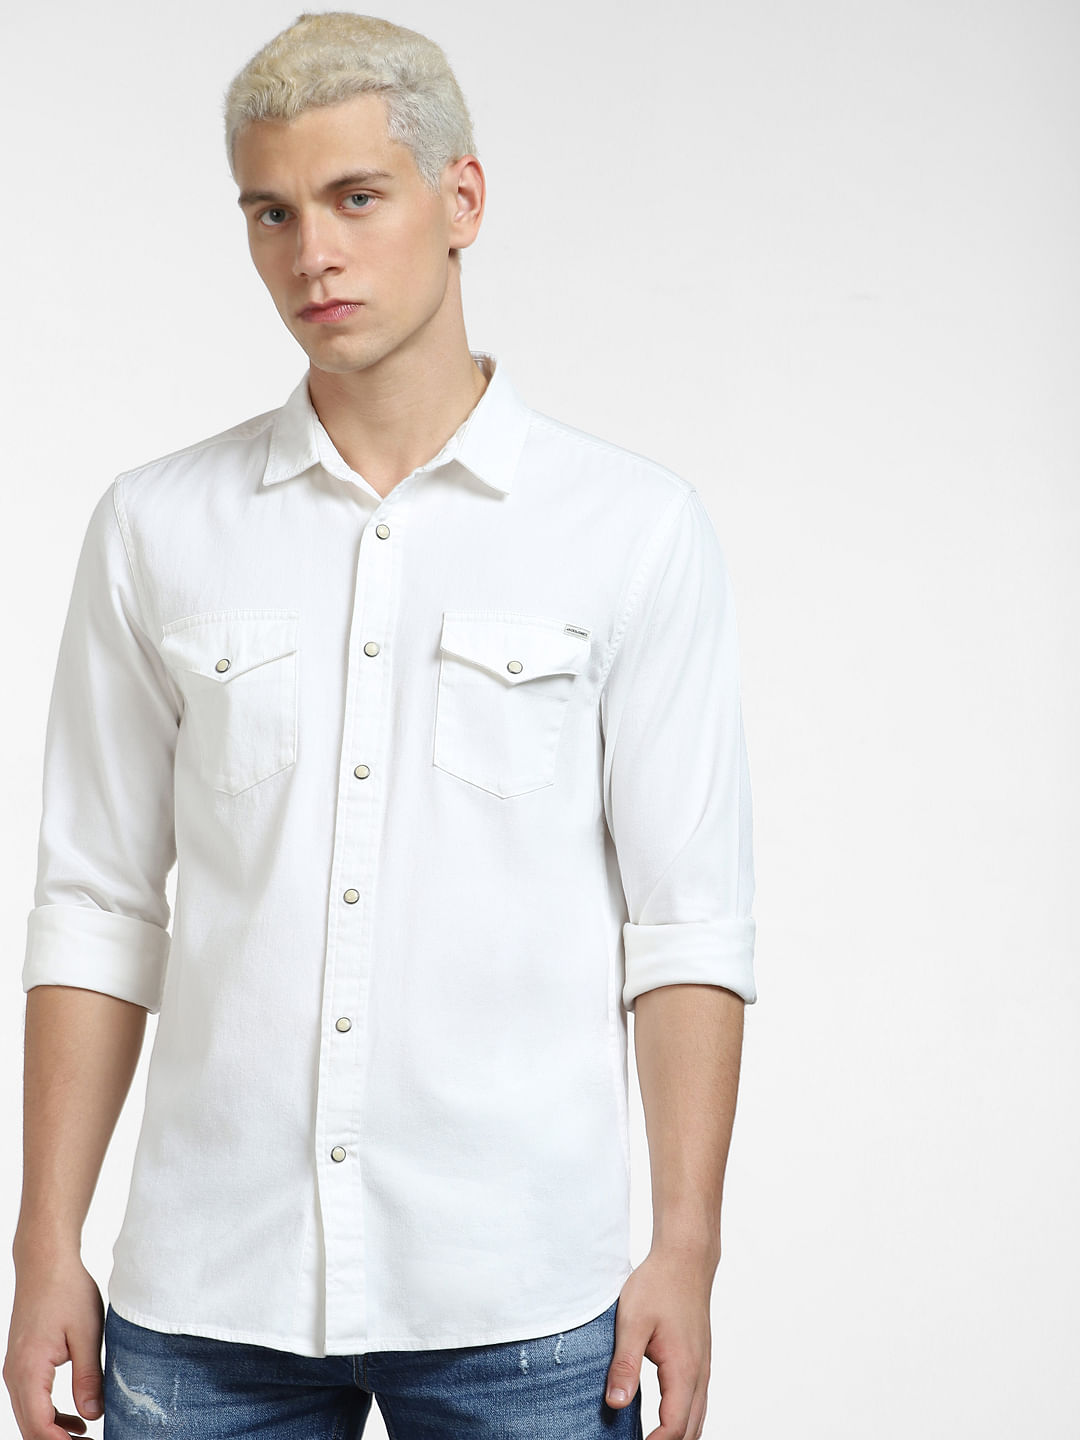 COOFANDY Mens Casual Dress Shirt Button Down Shirts LongSleeve Denim Work  Shirt  Weird Deals